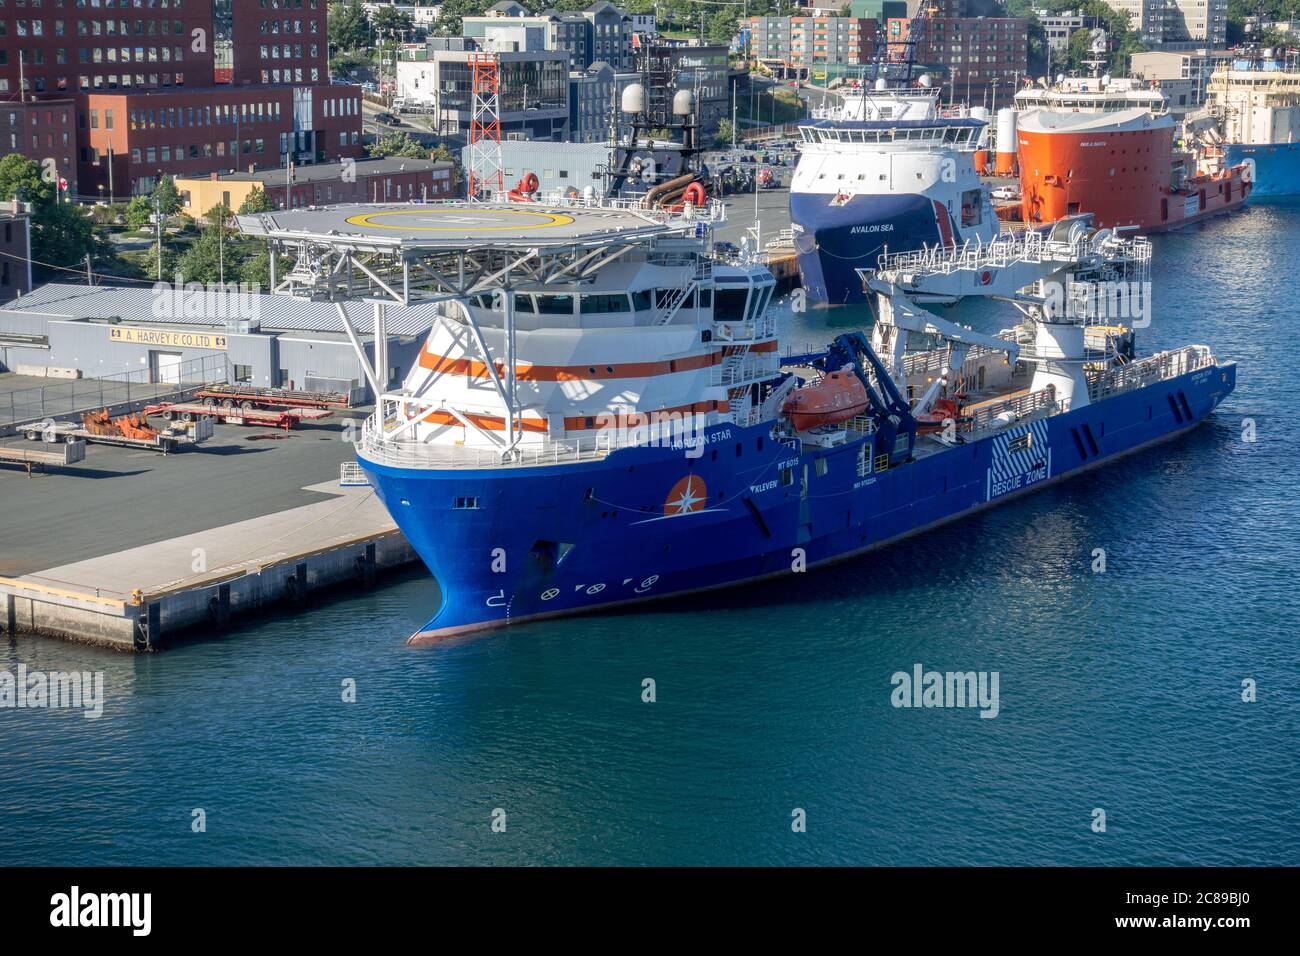 Navire de ravitaillement en mer Horizon Star équipé D'UN débarcadère d'hélicoptère au port de St Johns, Terre-Neuve-et-Labrador Canada Banque D'Images